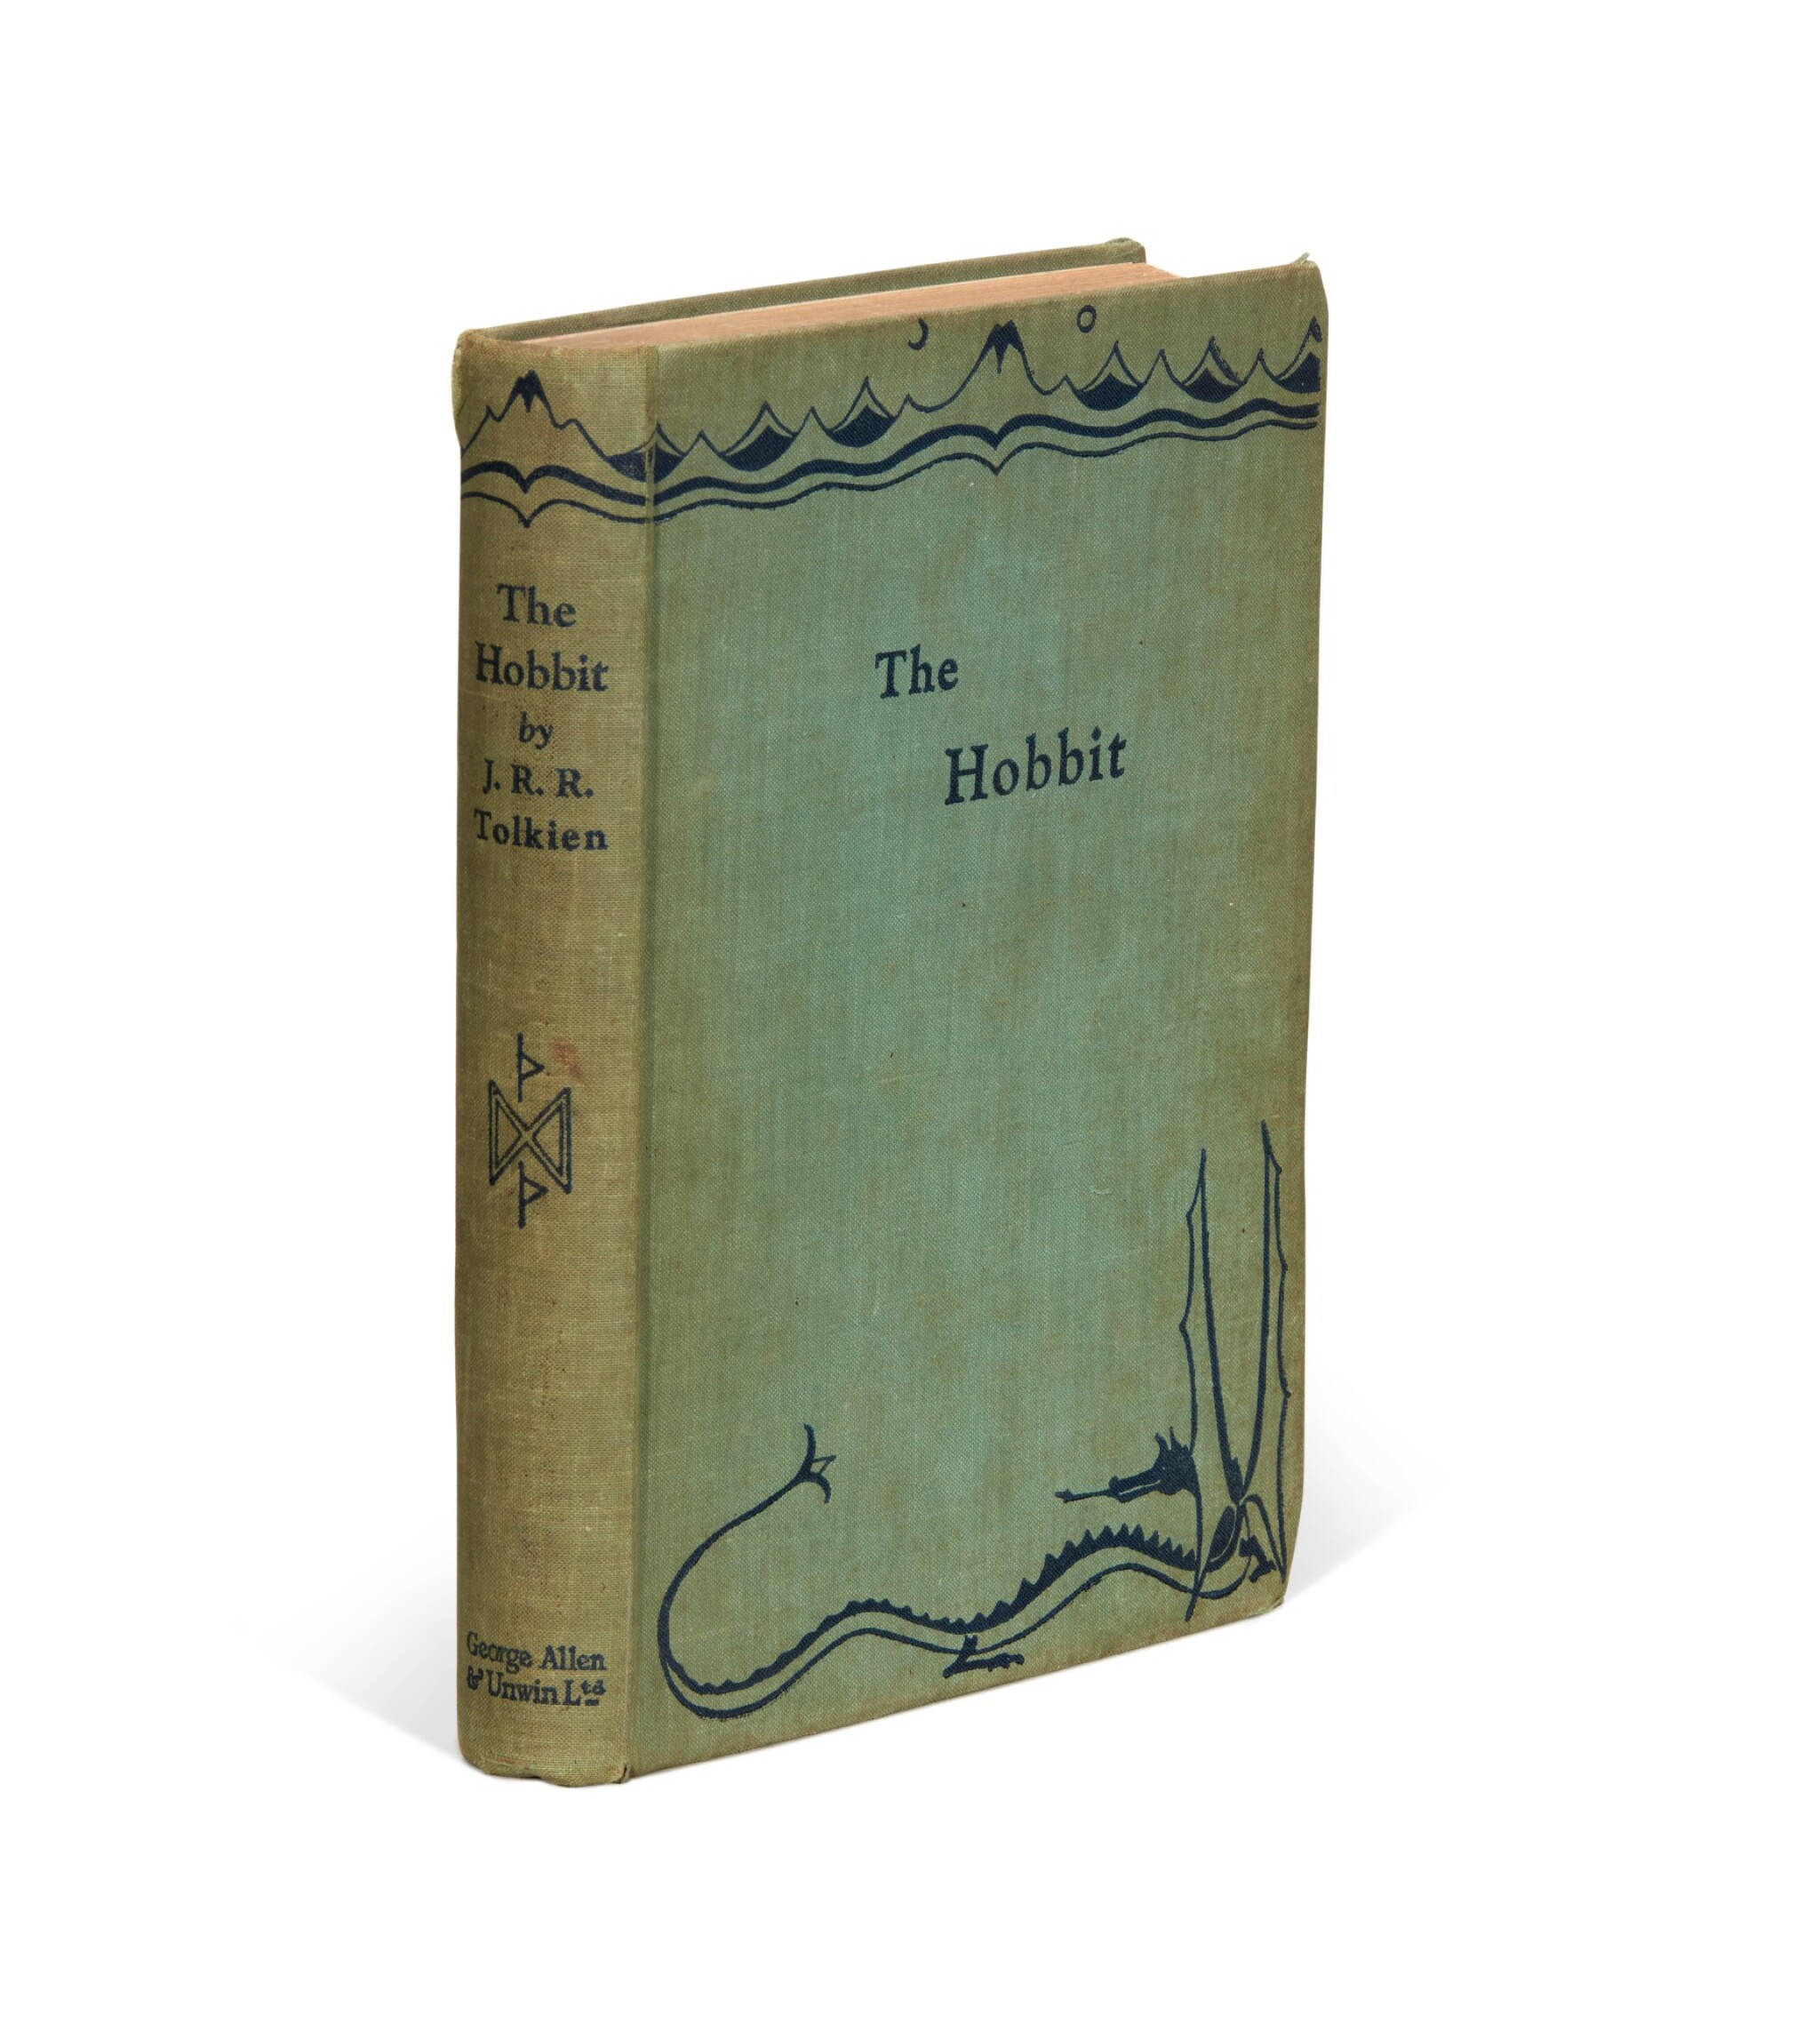 Tolkien "The Hobbit" 1937 First Edition